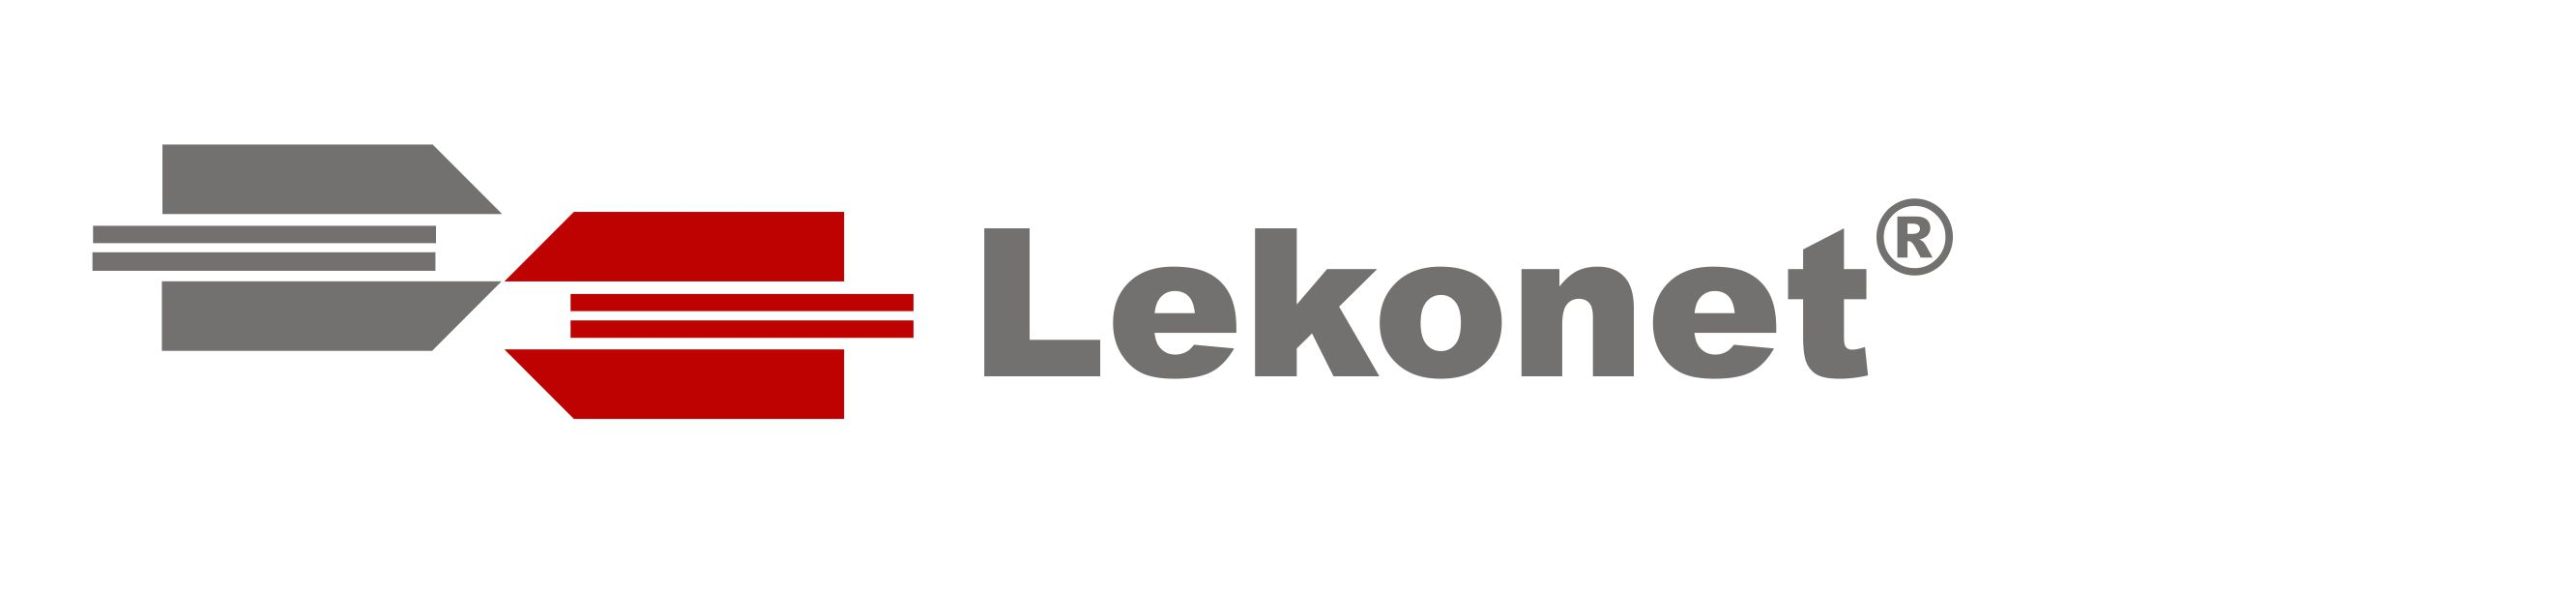 Lekonet Daten- und Fernemeldetechnik GmbH